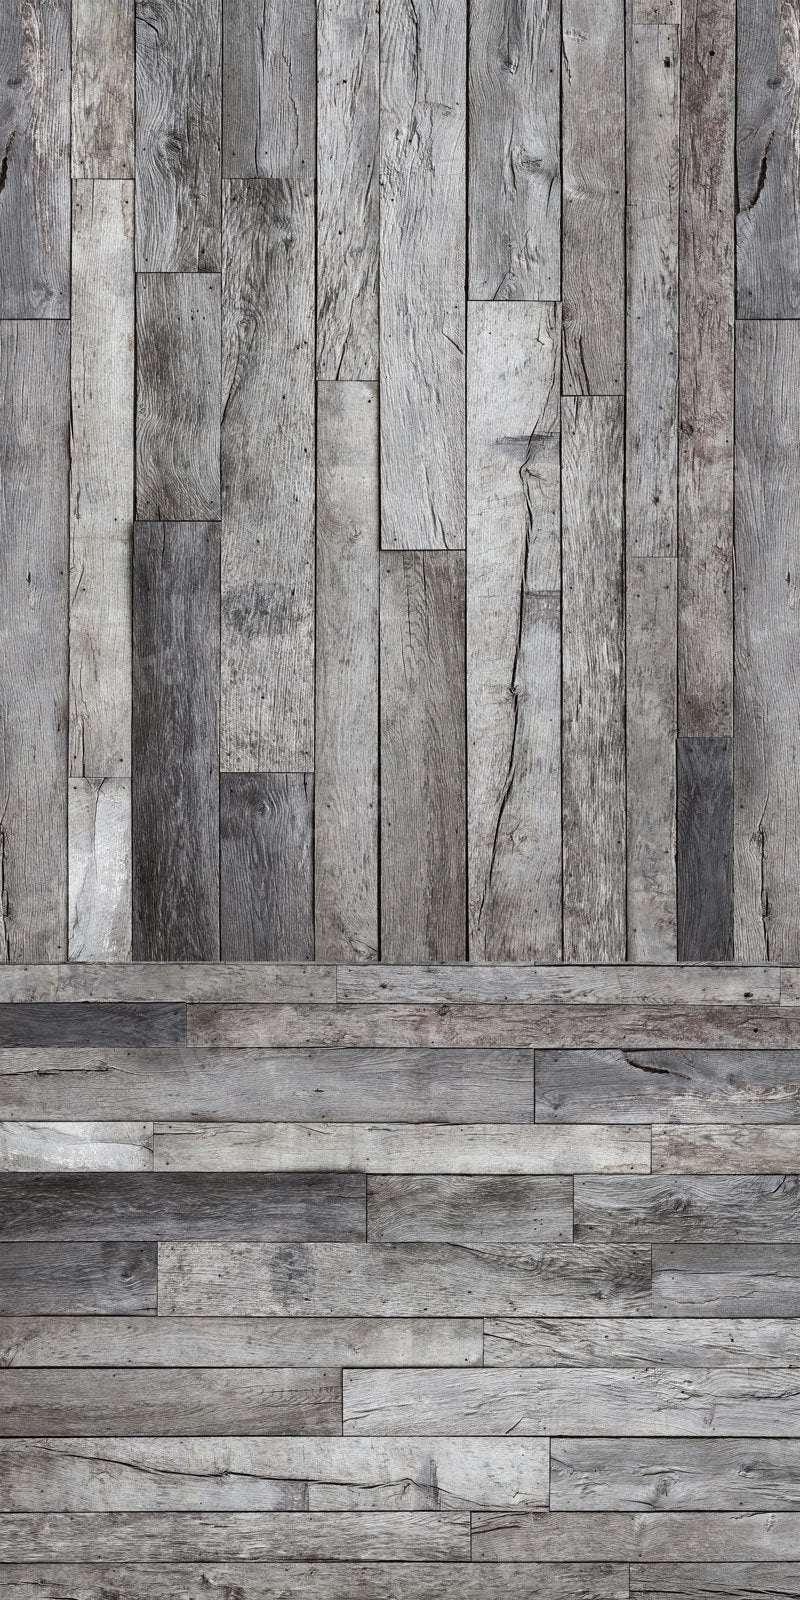 Kate Balayage la texture fissurée de toile de fond de planche de bois pour la photographie